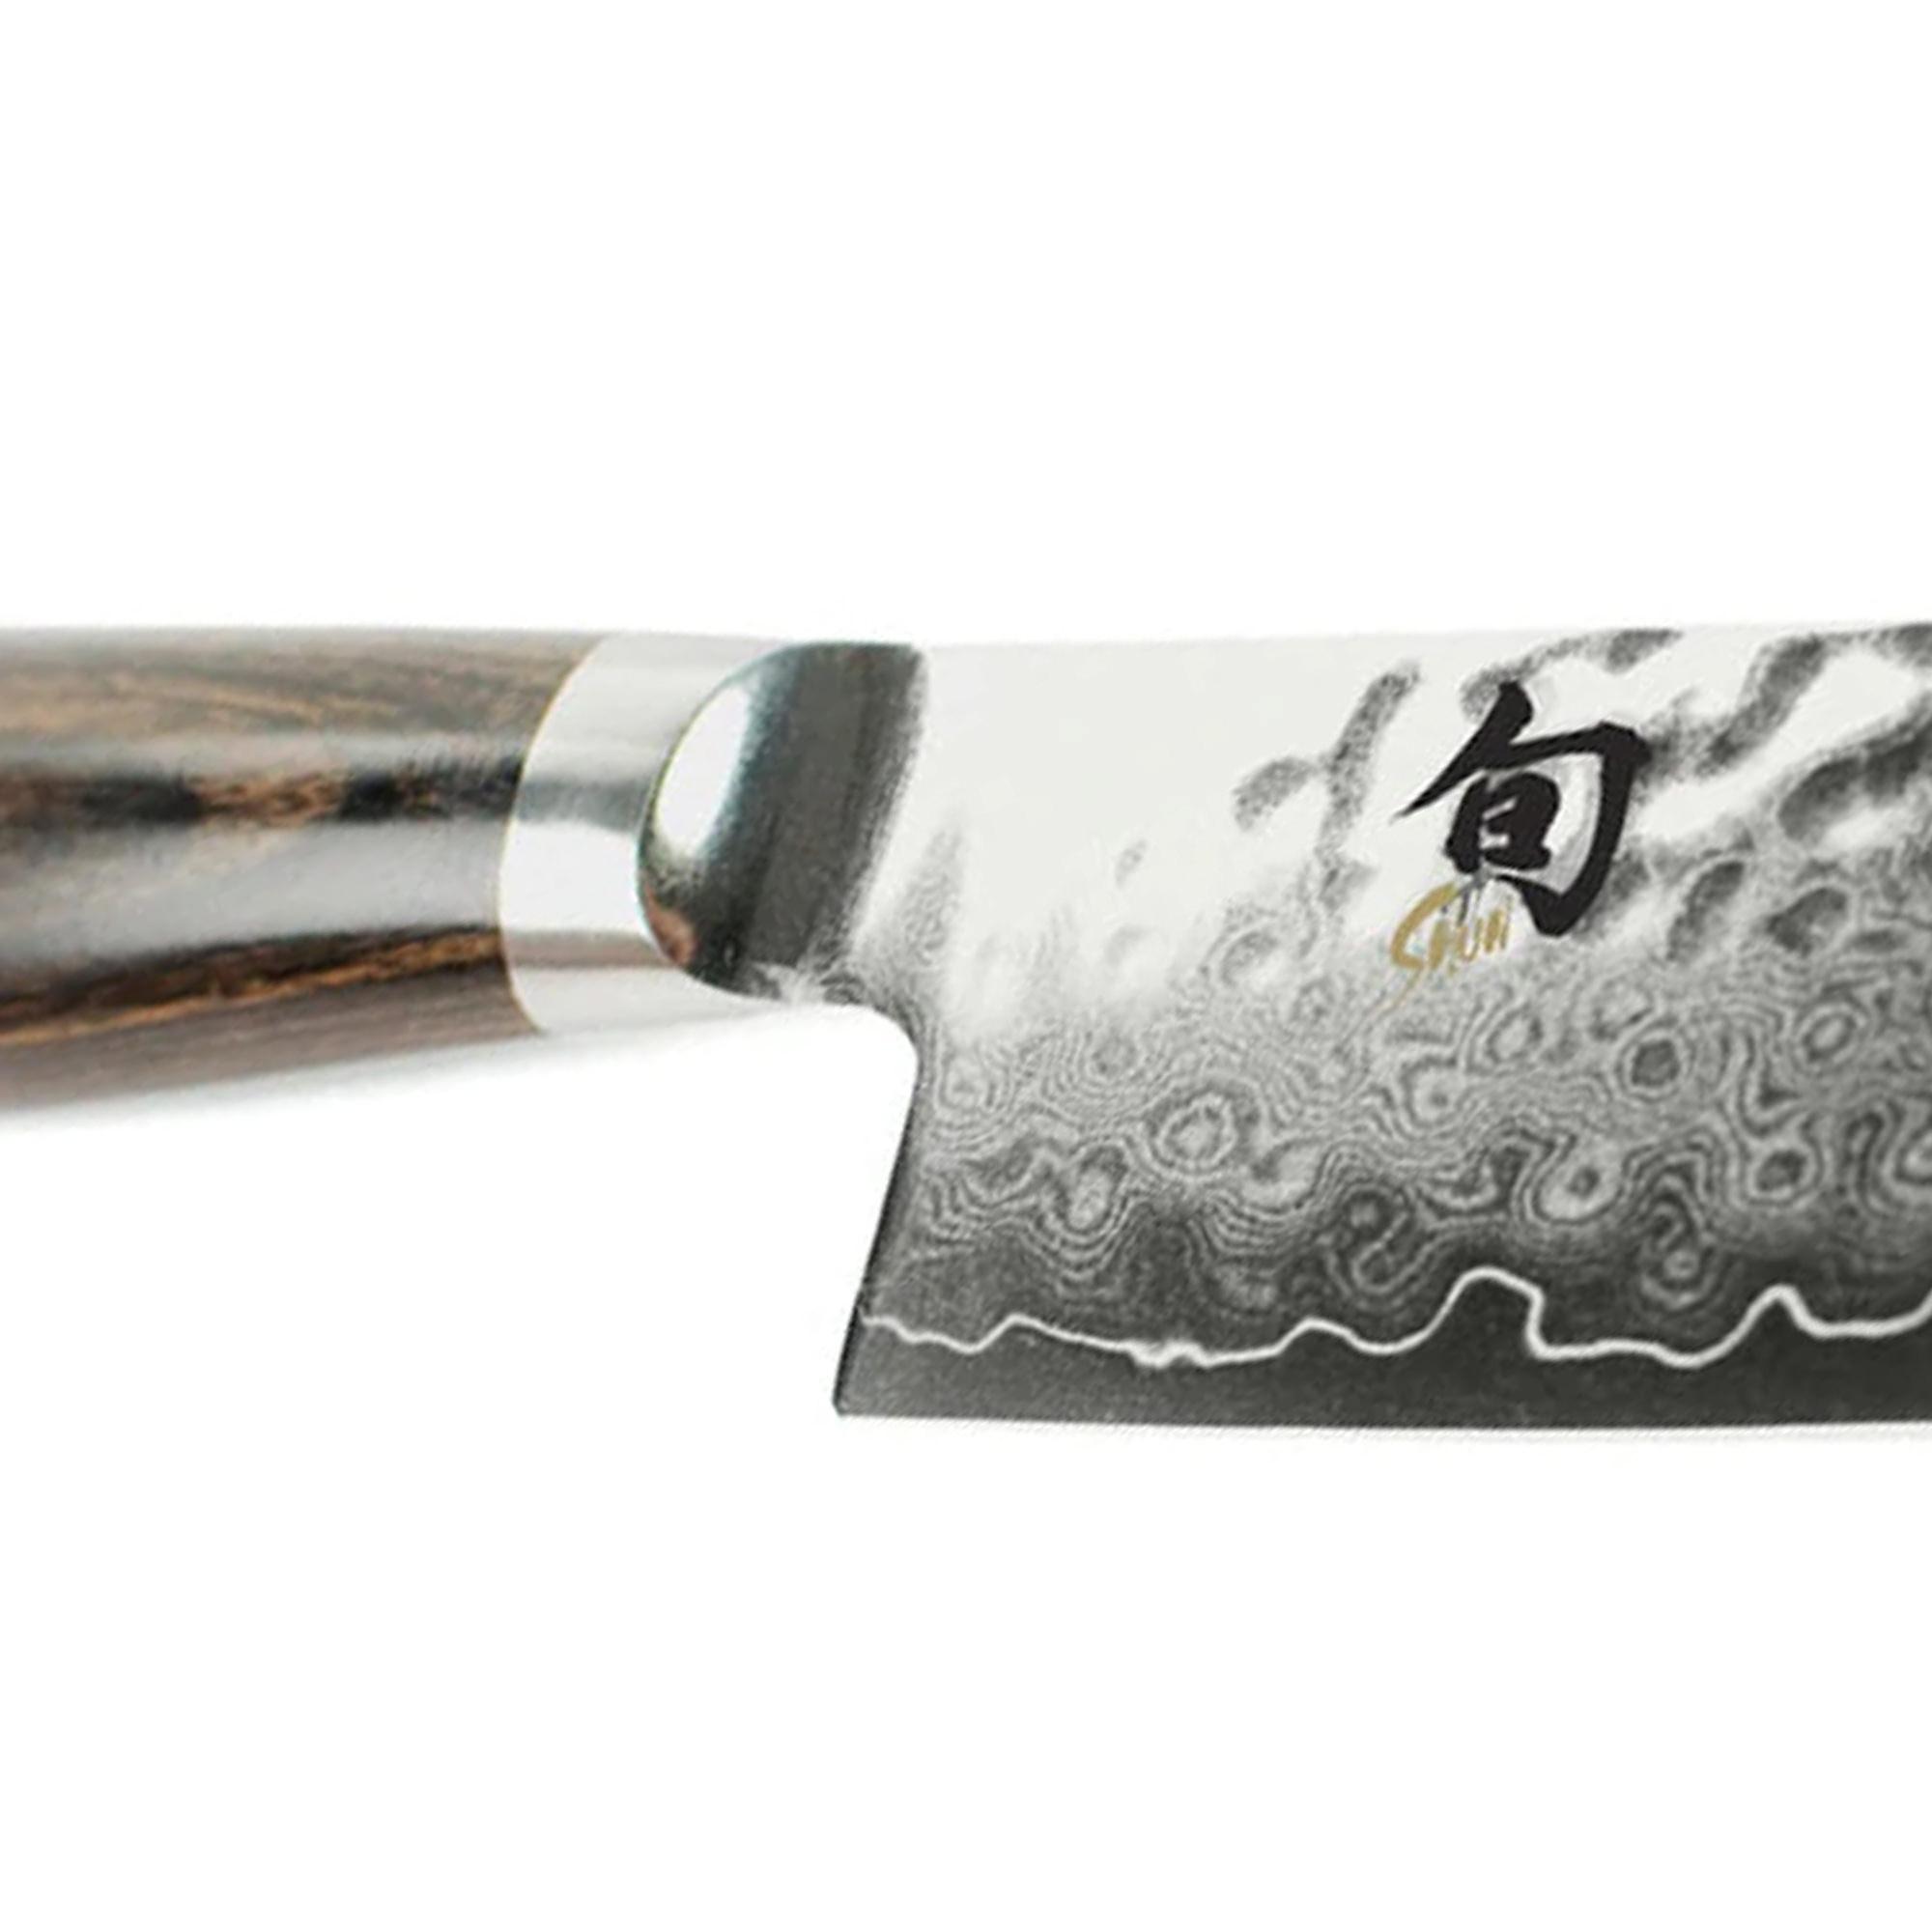 Shun Premier Utility Knife 15cm Image 4